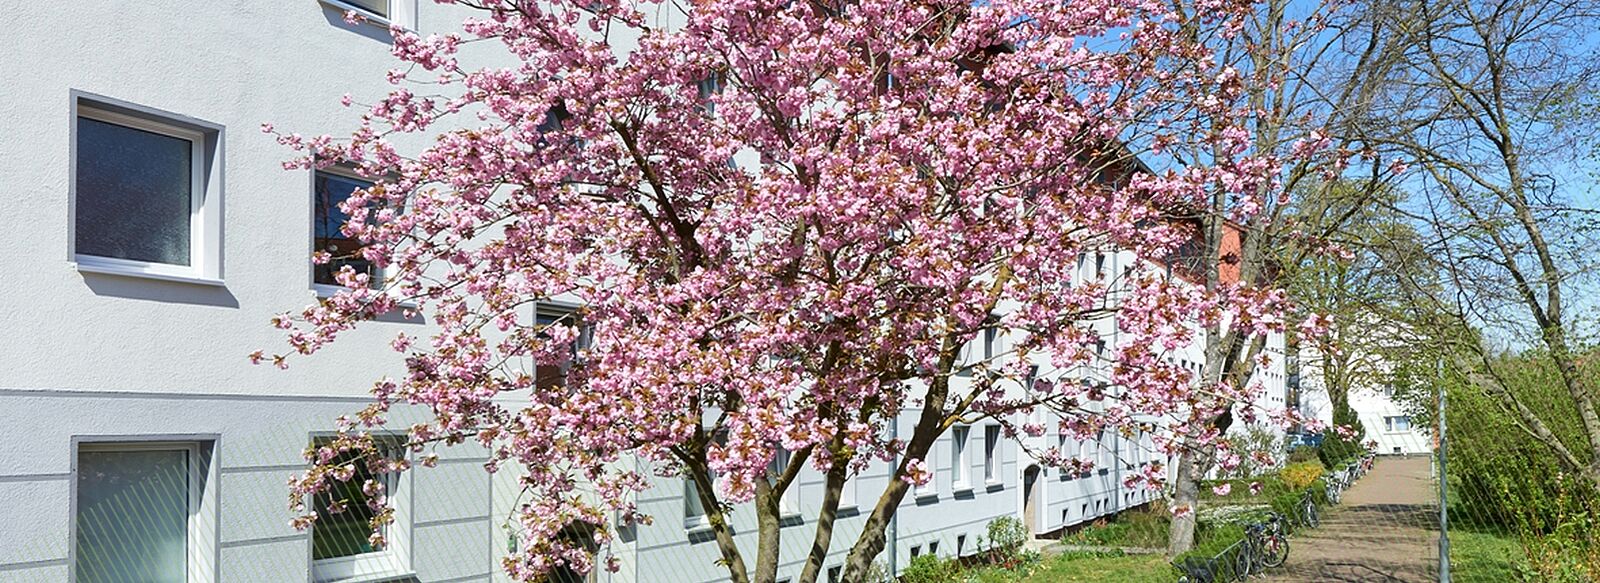 Helles Mehrfamilienhaus, davor Fahrräder und eine Baumkrone mit rosa Blütenblättern